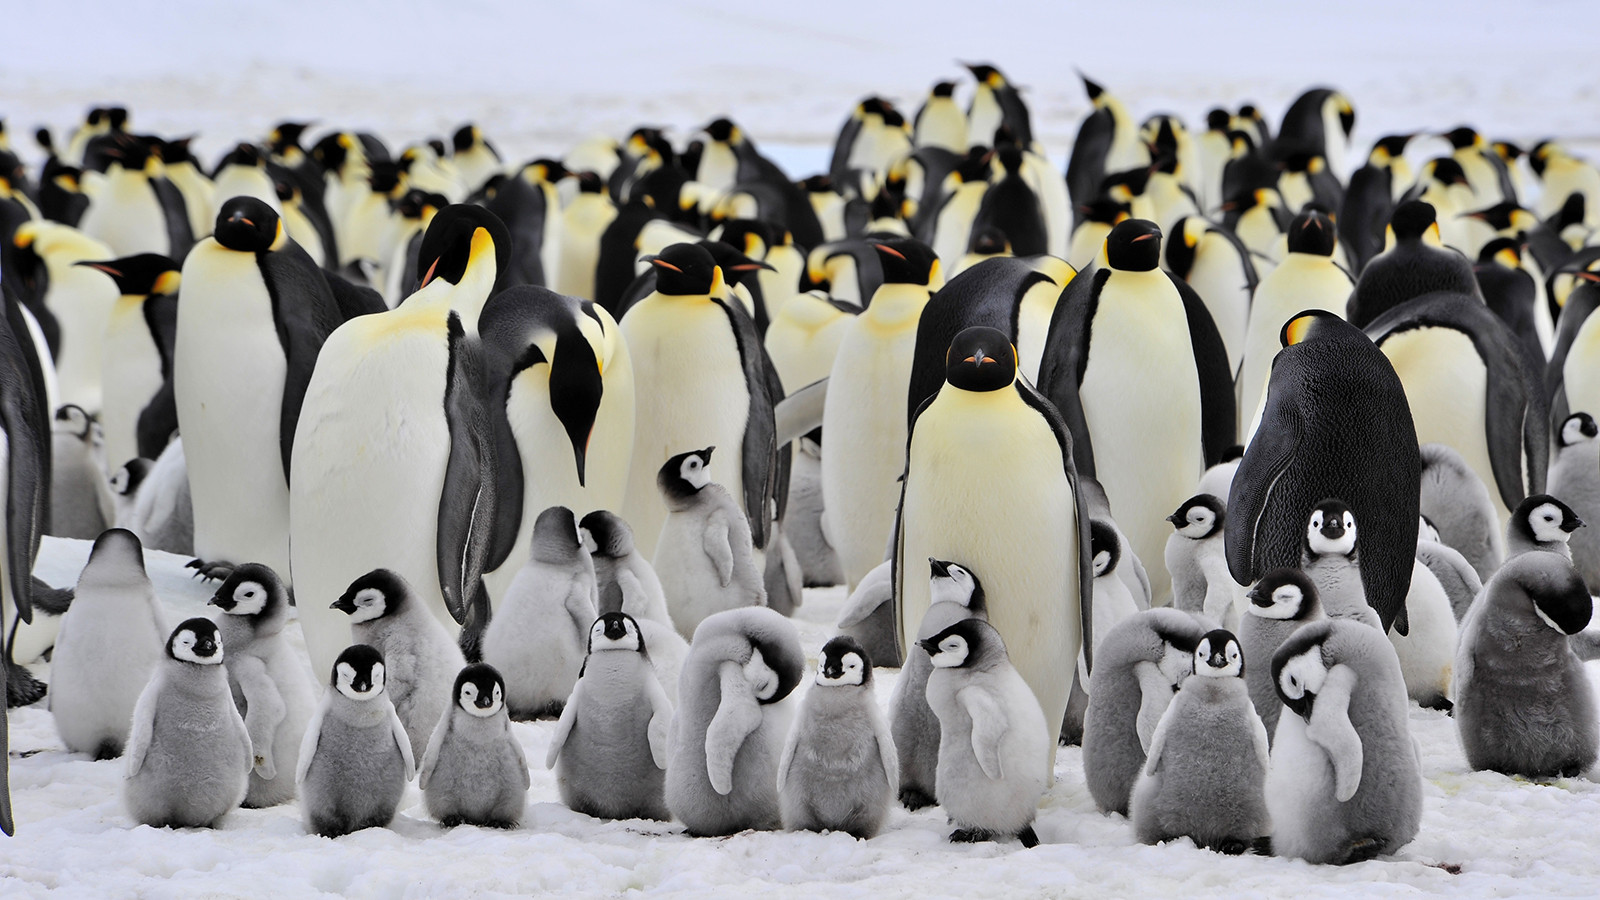 Ανακαλύφθηκε απολίθωμα γιγάντιου πιγκουίνου με ύψος ανθρώπου [ΦΩΤΟ]